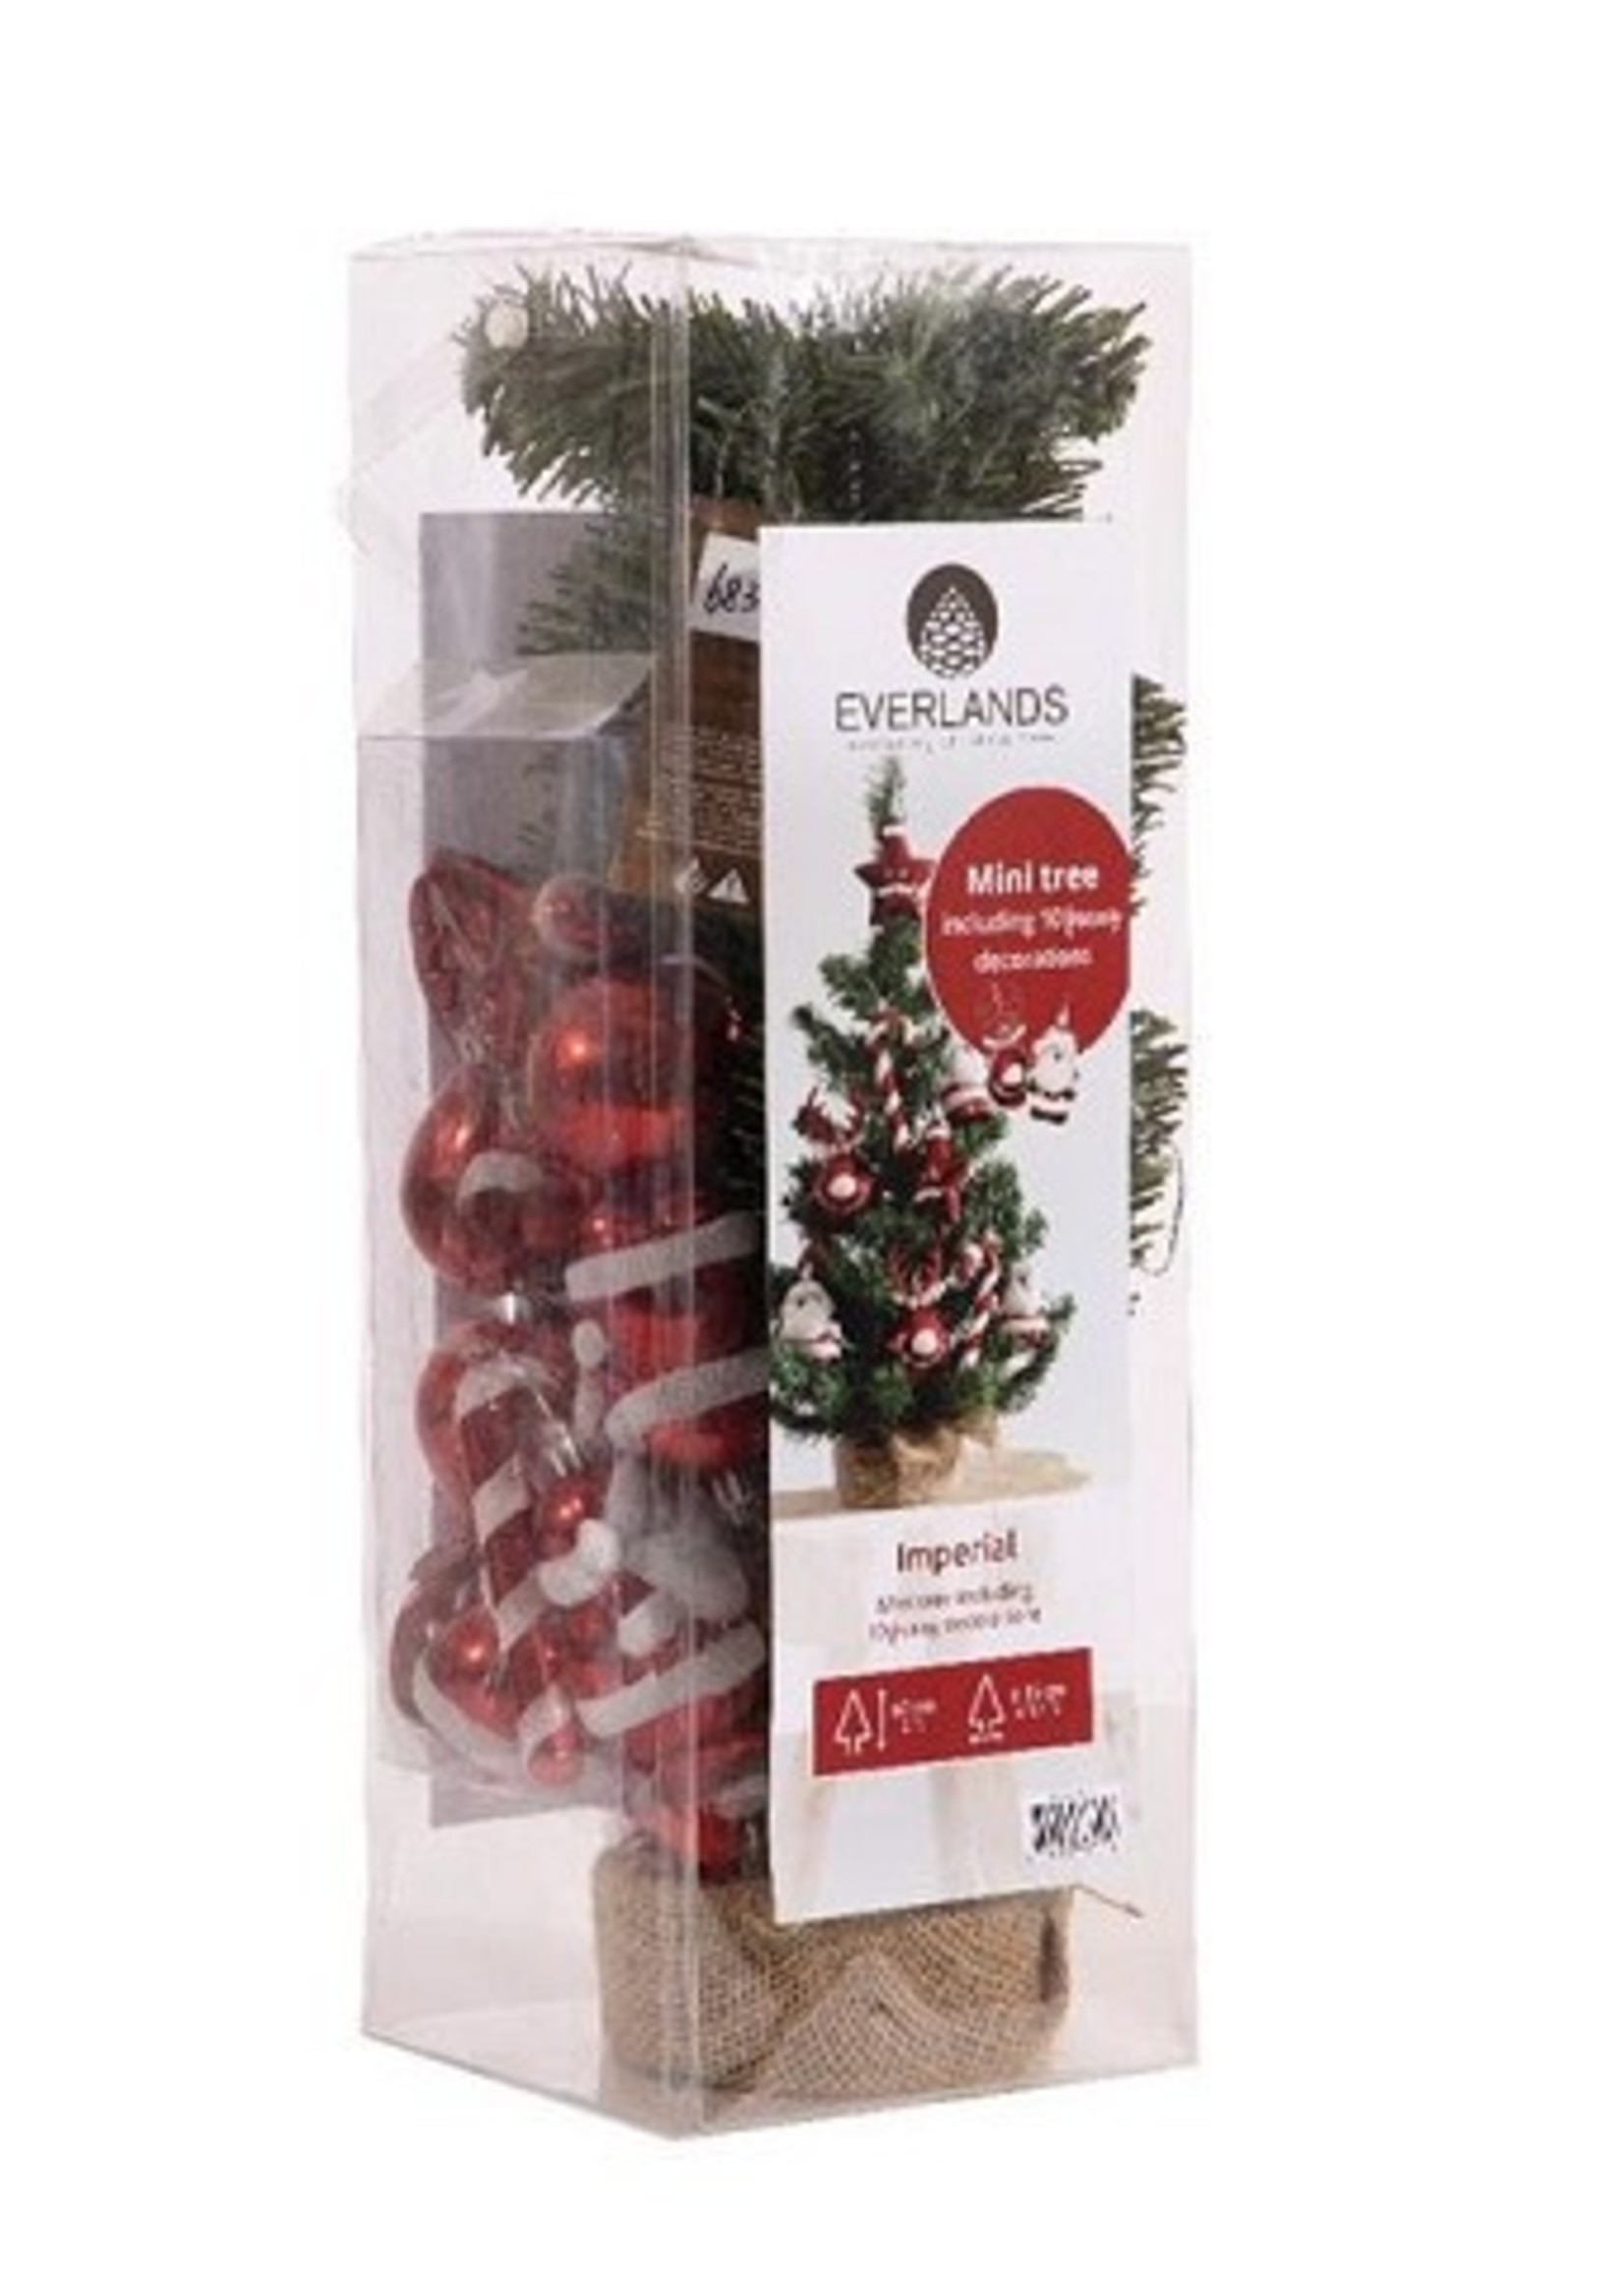 Everlands kunststof kerstboom inclusief decoratie kerstrood/wit dia35cm x 60cm